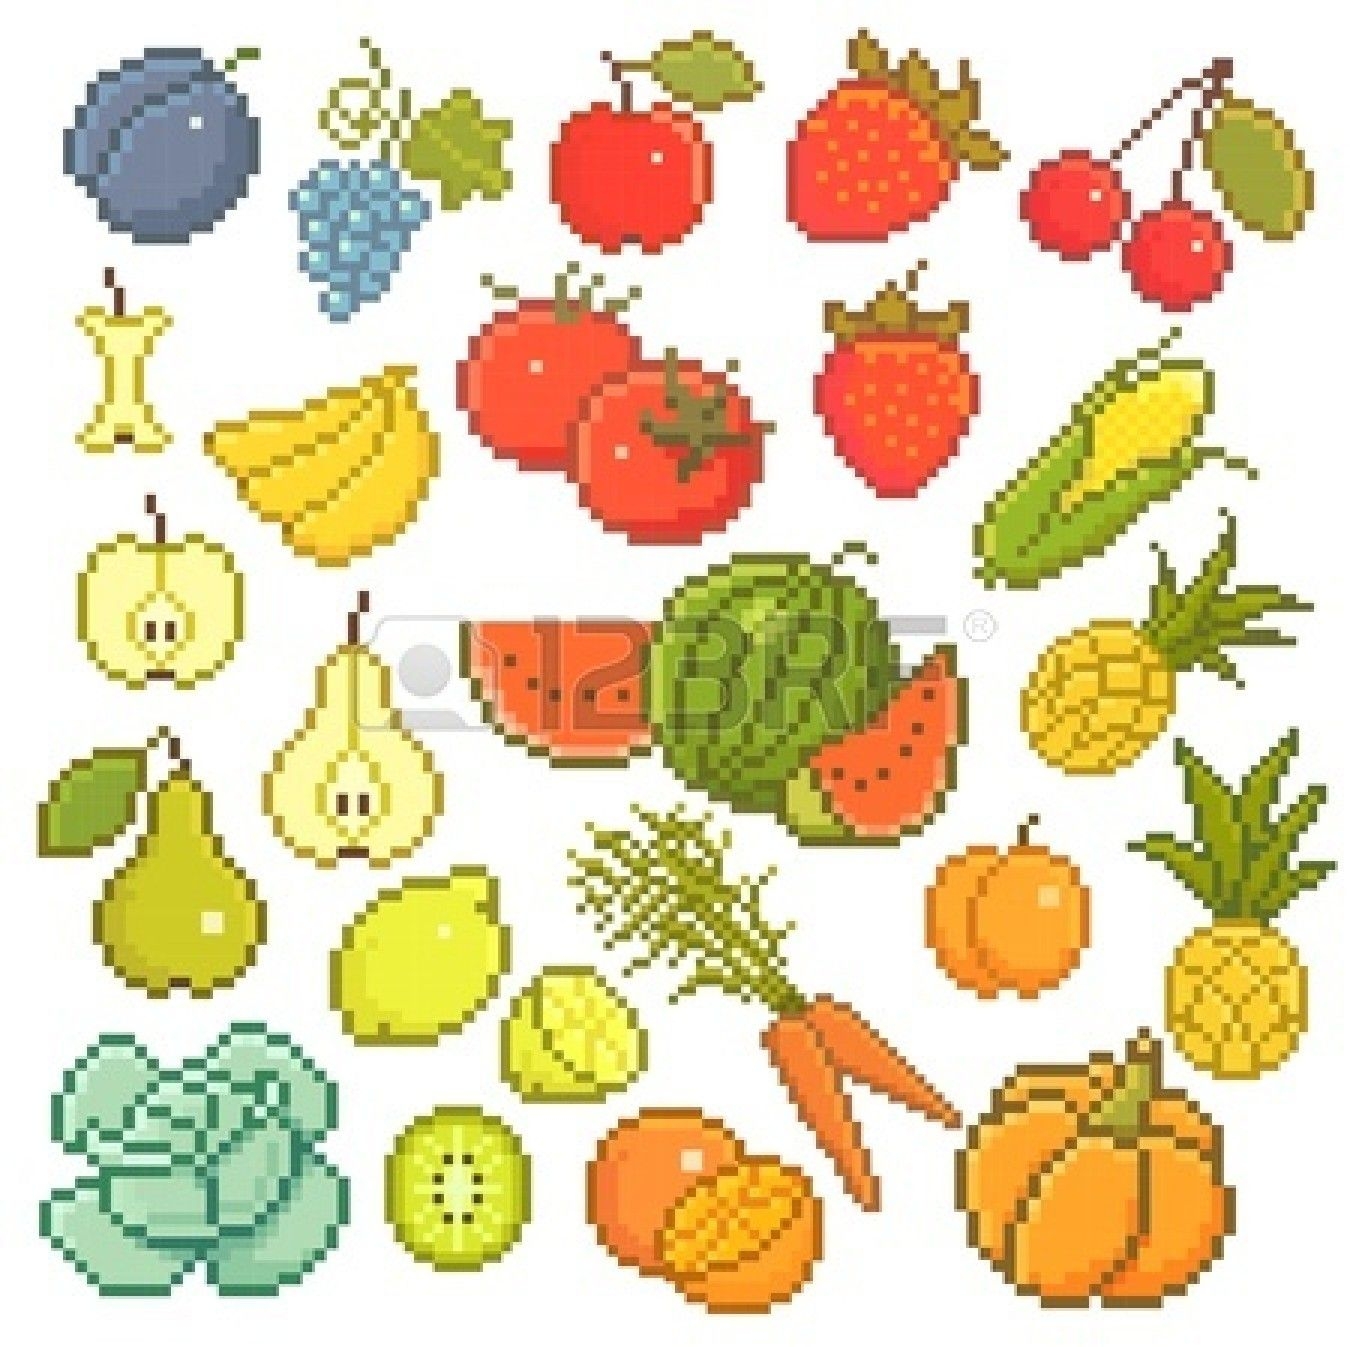 Пиксельные овощи и фрукты